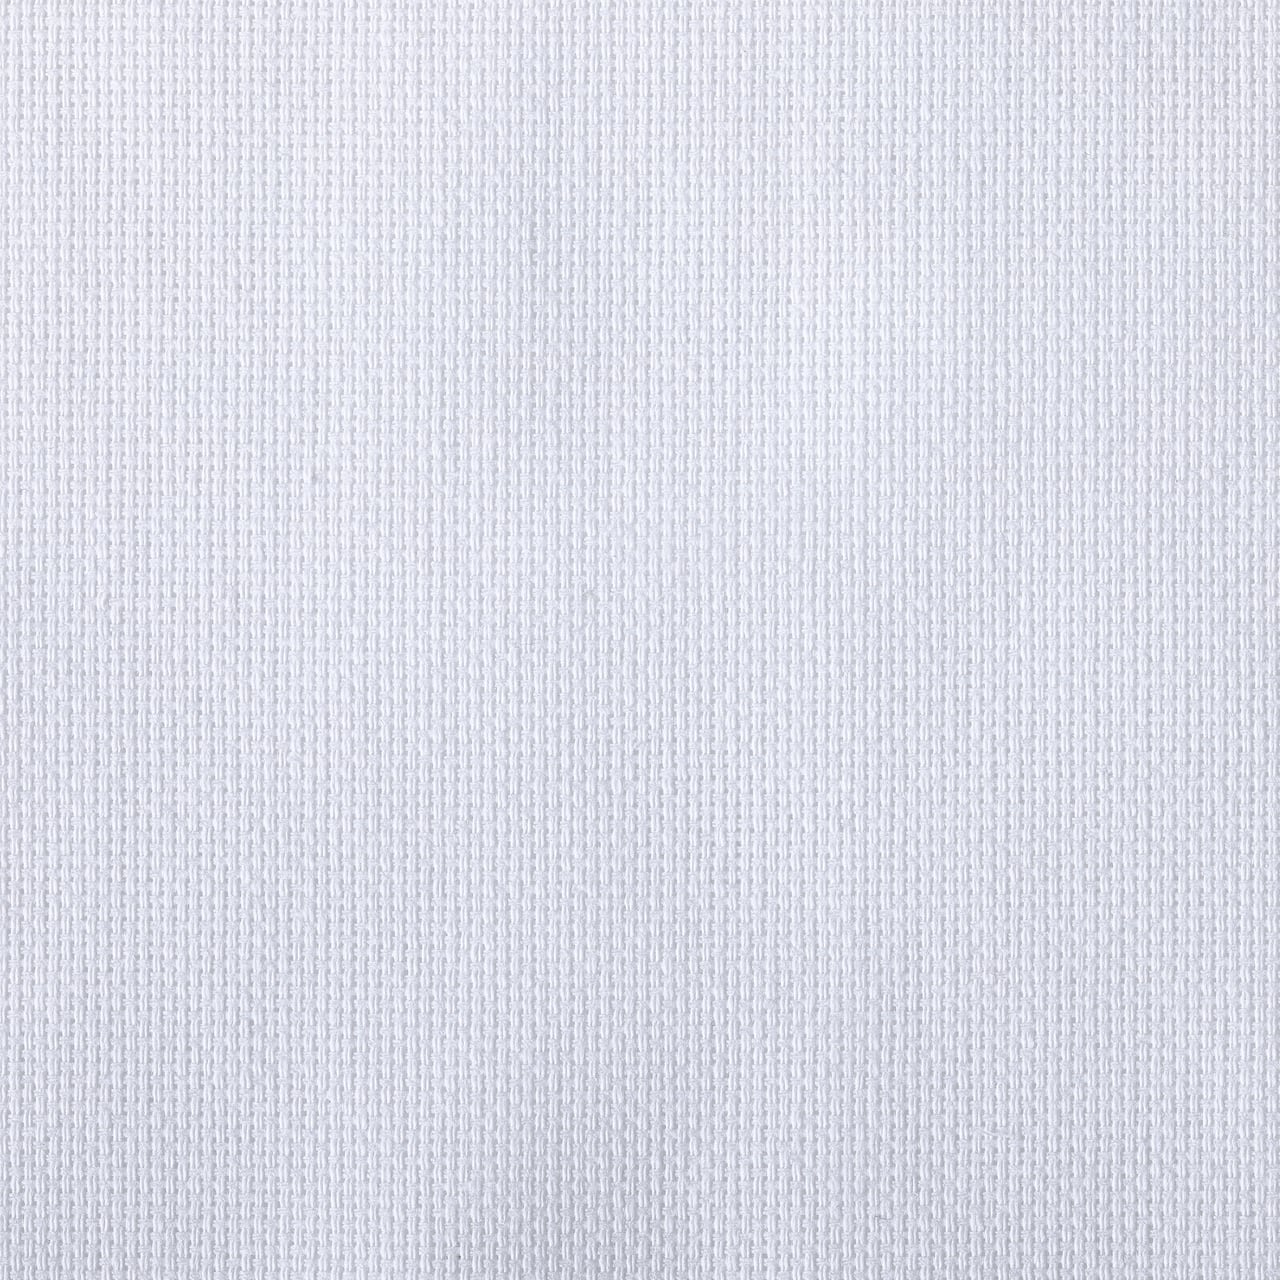 White Aida Cloth by Loops &#x26; Threads&#x2122;, 15&#x22; x 18&#x22;